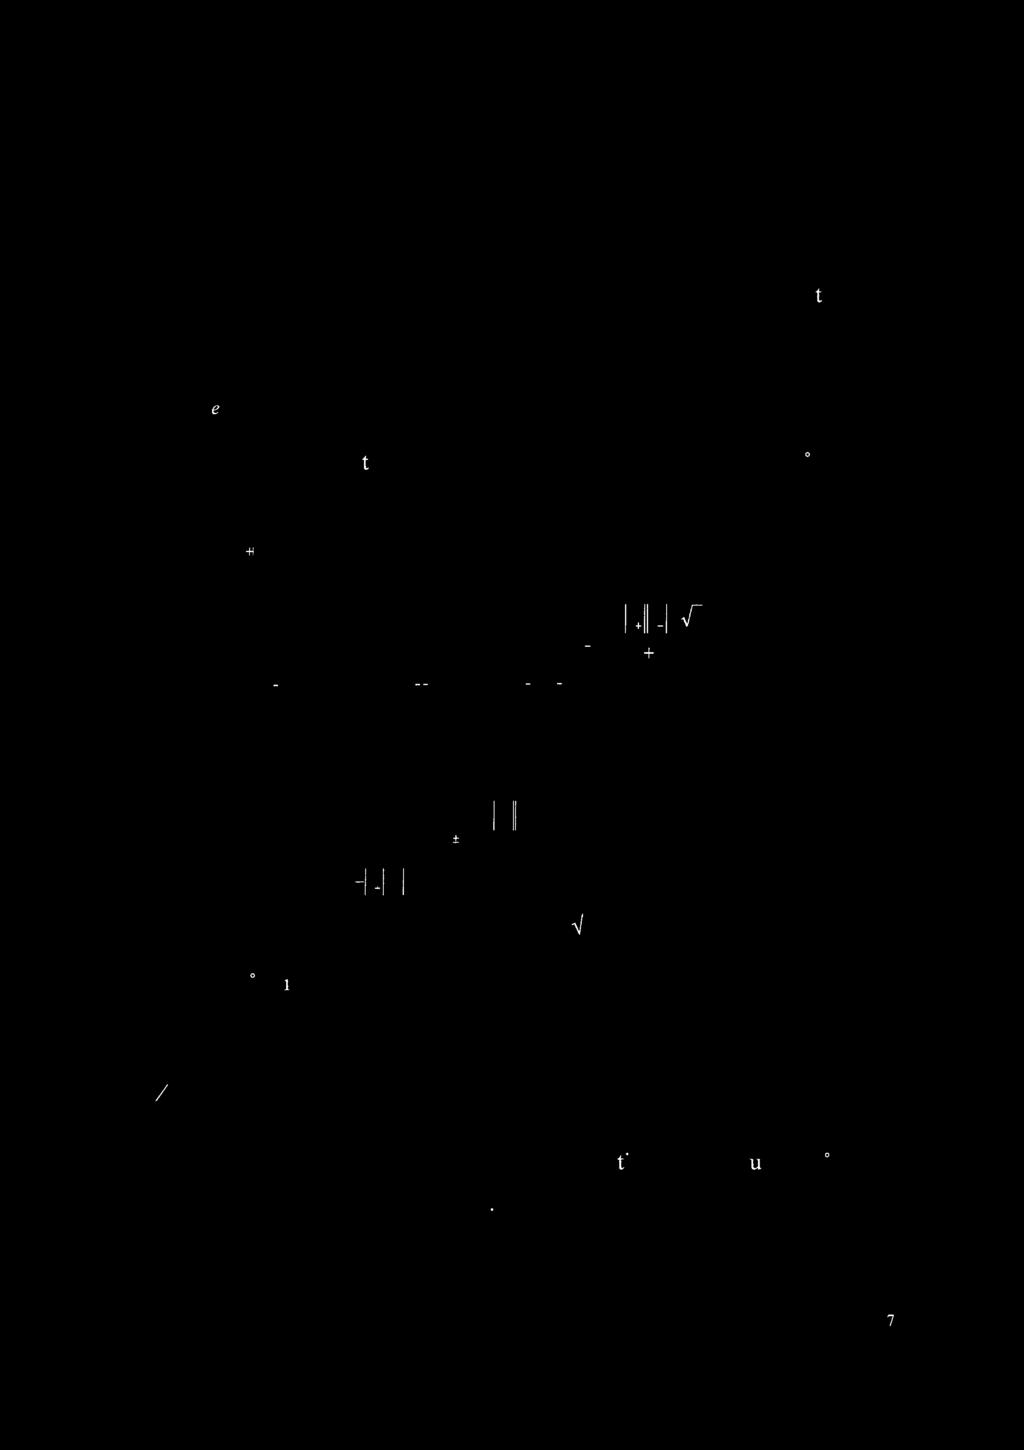 ys[s] er aktivitet til S. Tilnærmelser for å estimere ys[s] foreslått av Debye og Htickel er vist i figuren under.